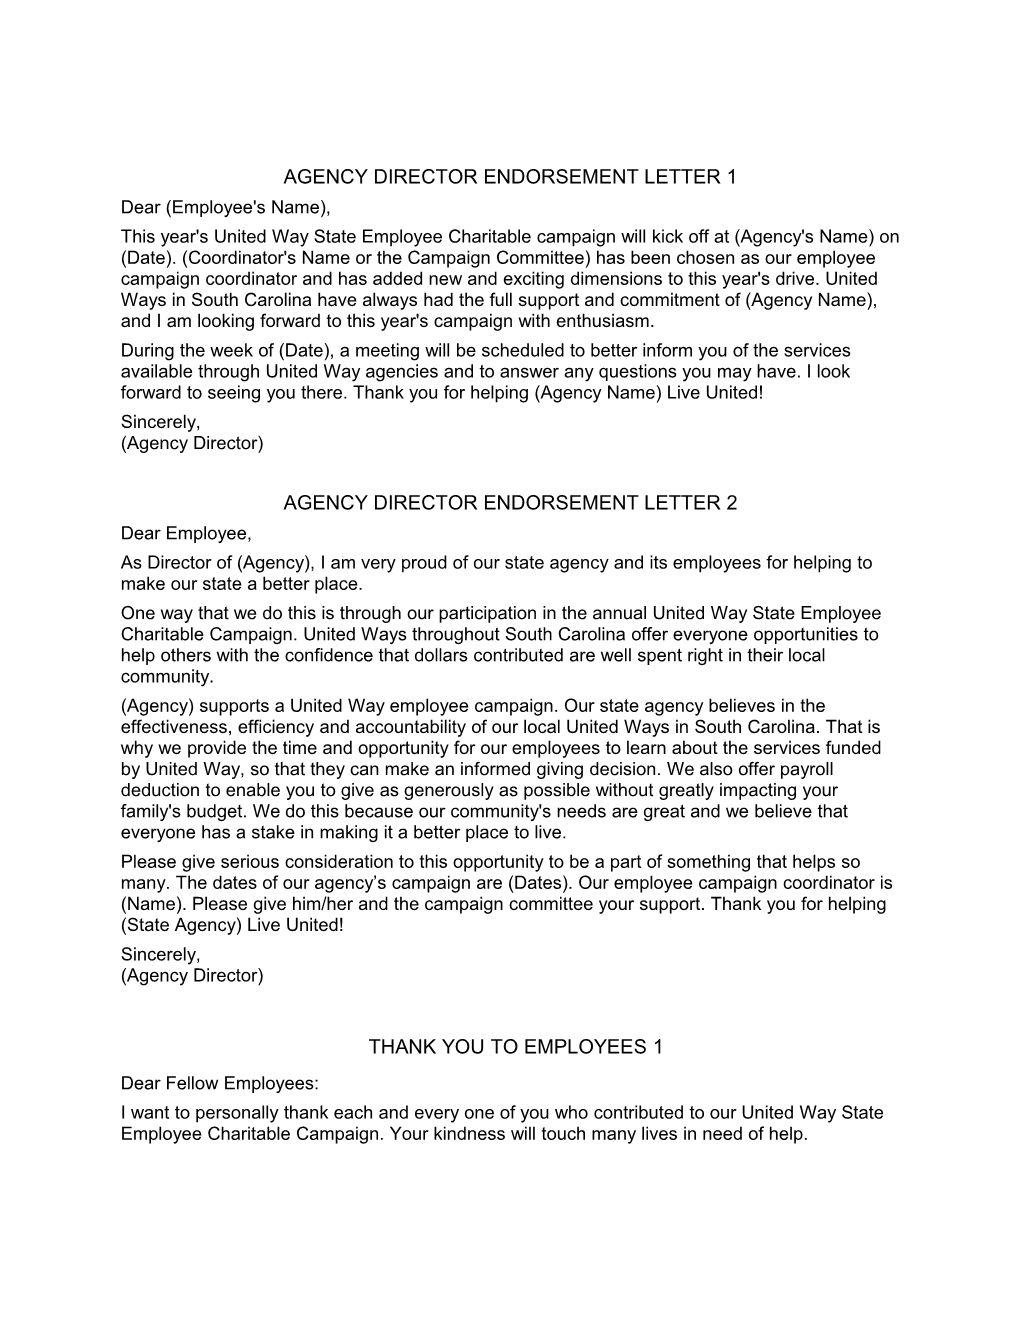 Agency Director Endorsement Letter 1